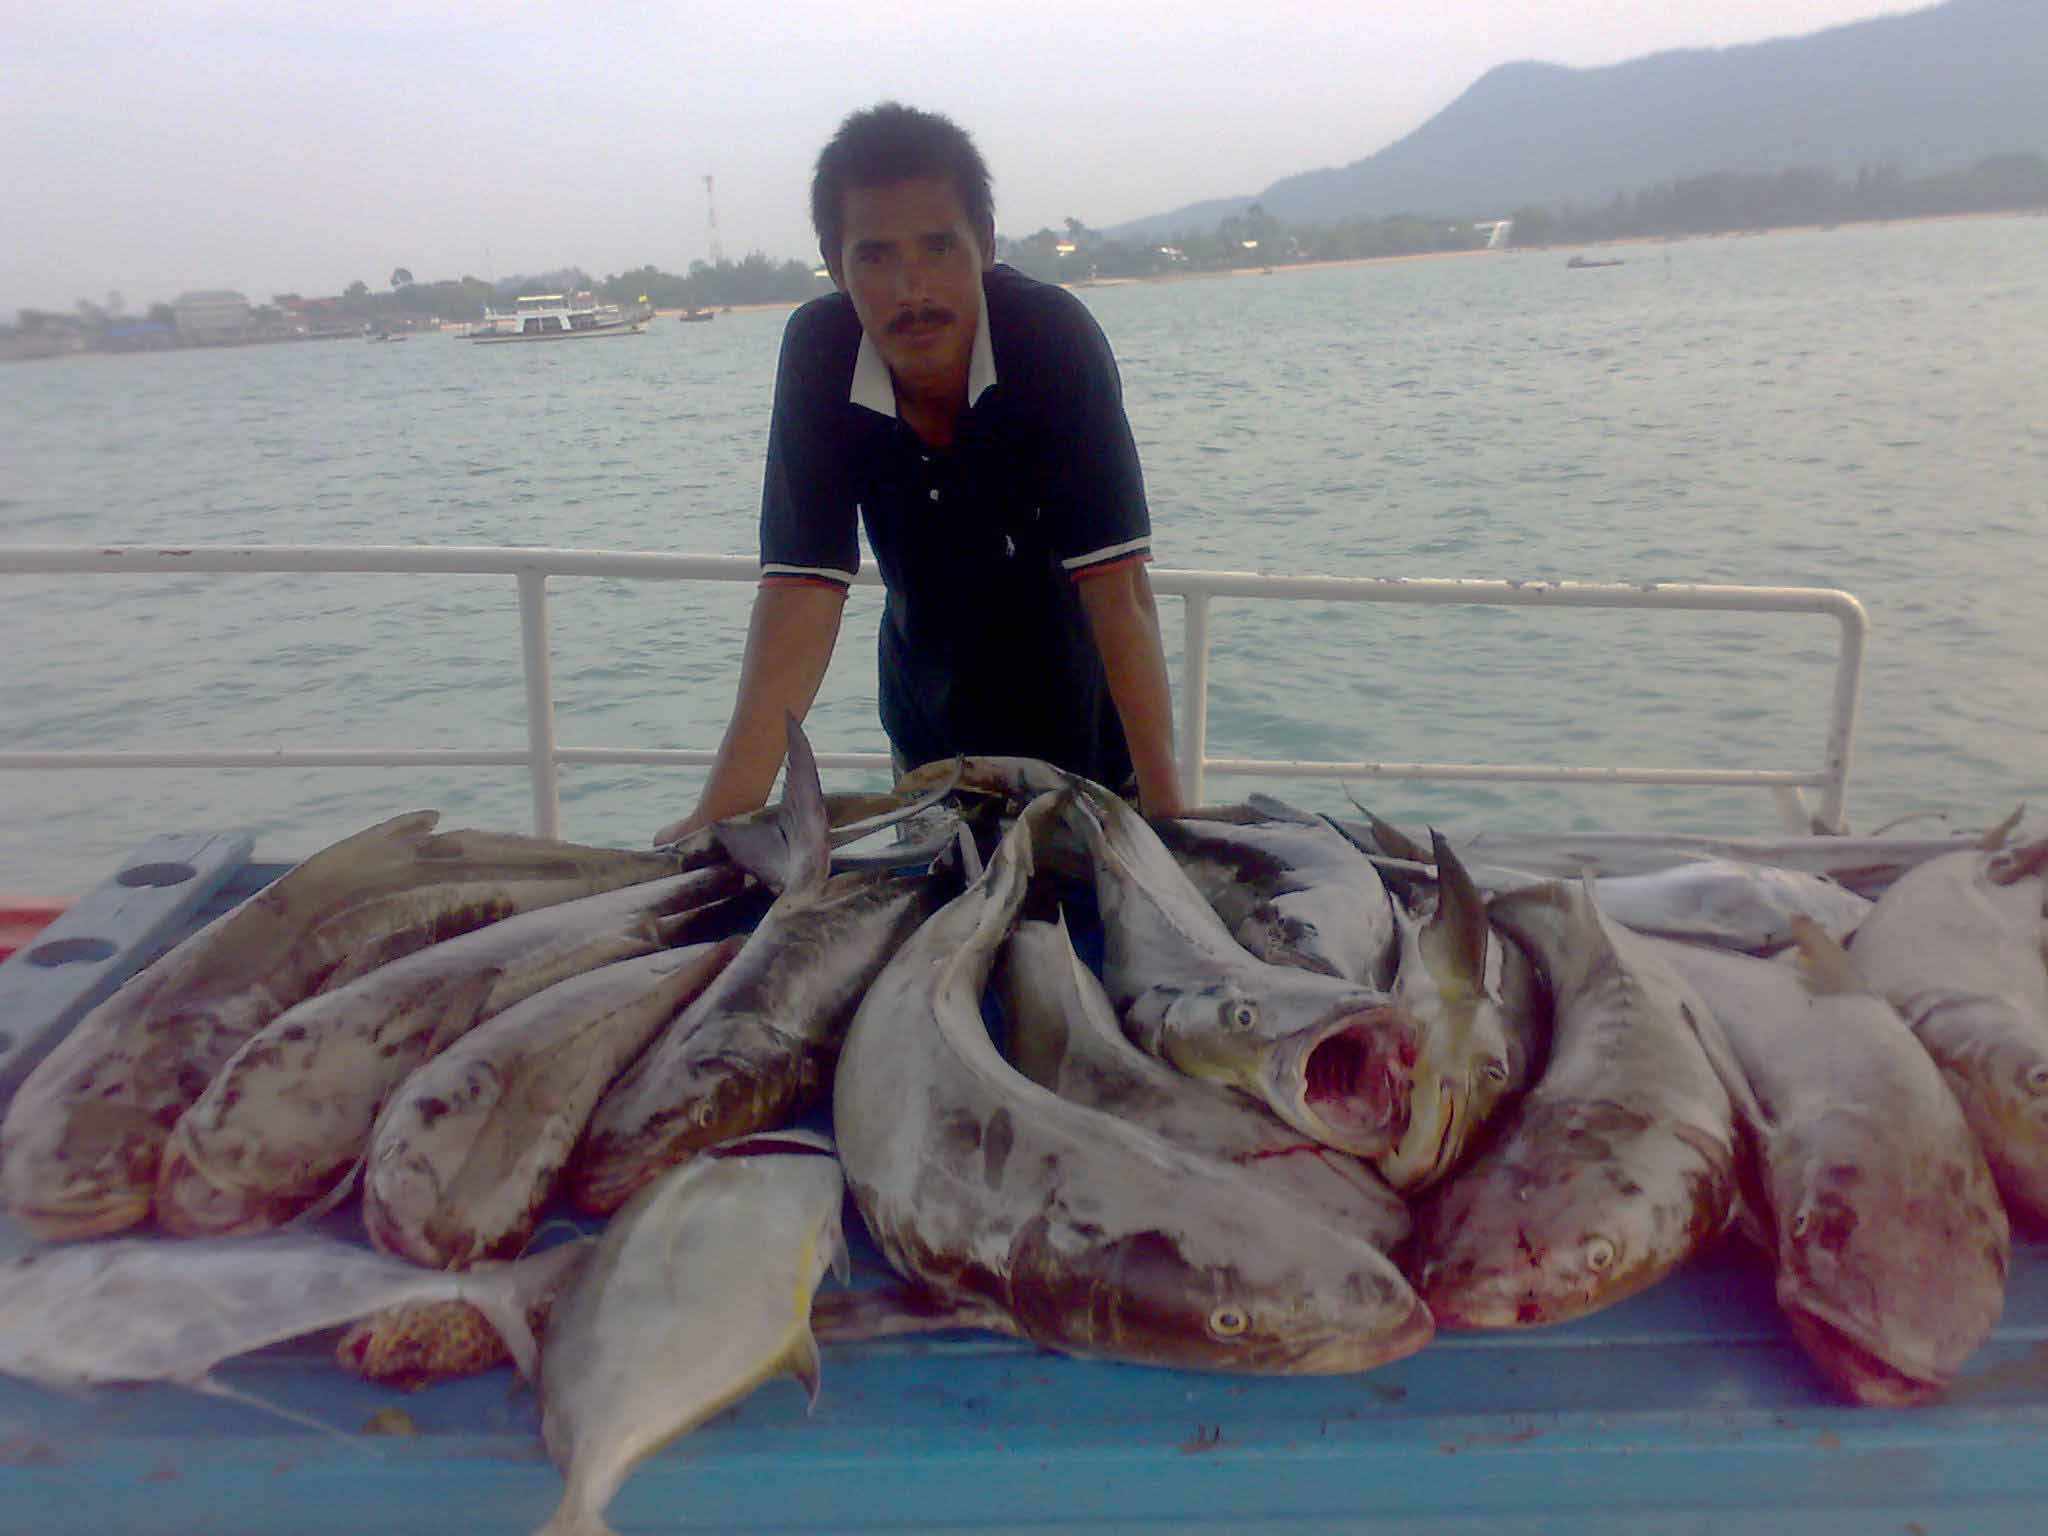 สนใจออกทริปตกปลา ติดต่อที่เบอร์ 081-177-6564 (ไต๋ธรรมบางเสร่)